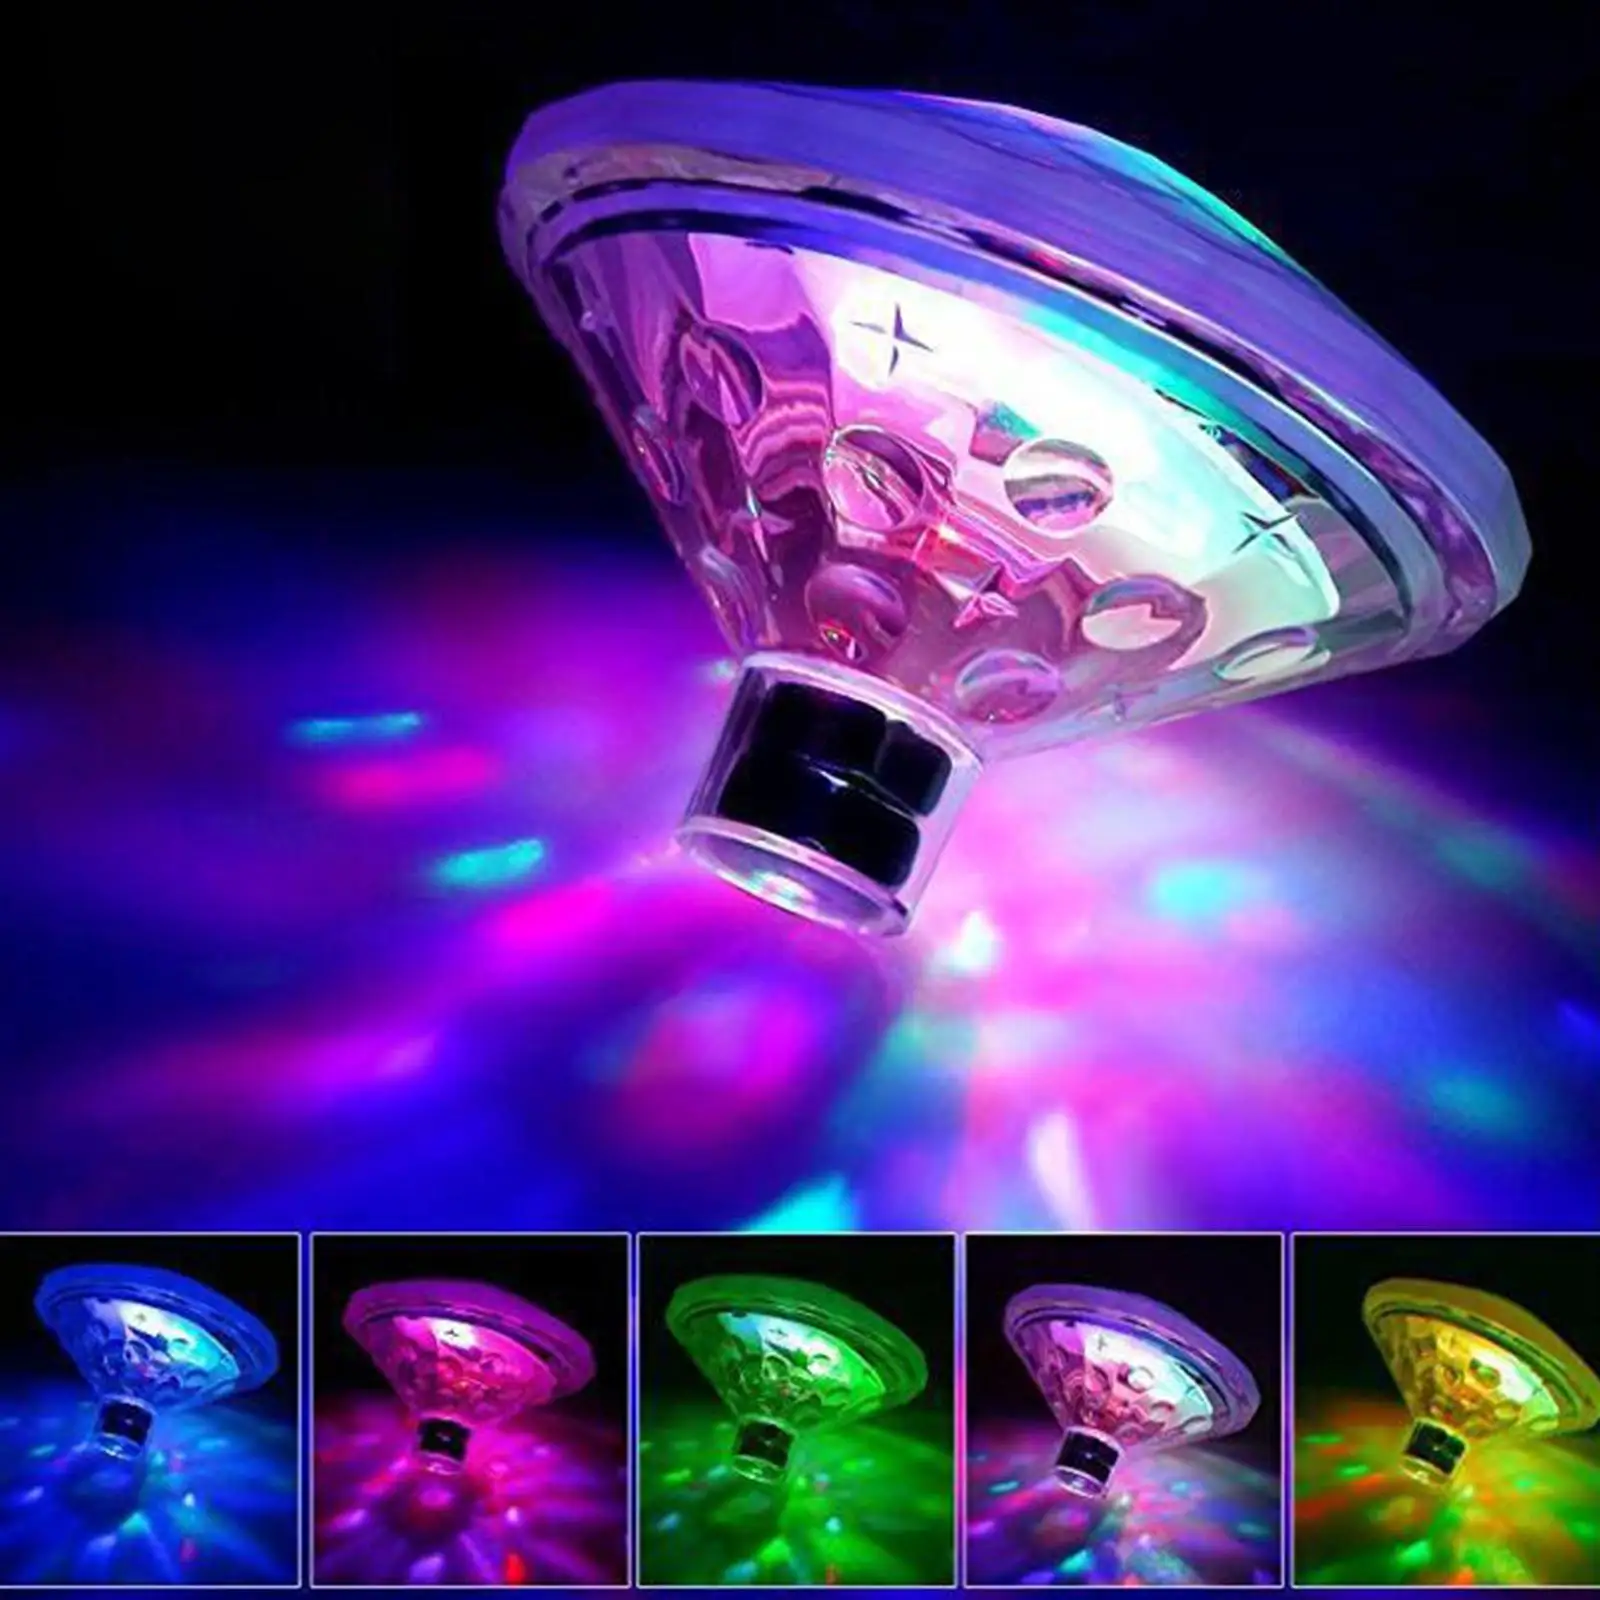 Floating LED  Pond Lamp Multicolor RGB for Pond Bathtub Decoration